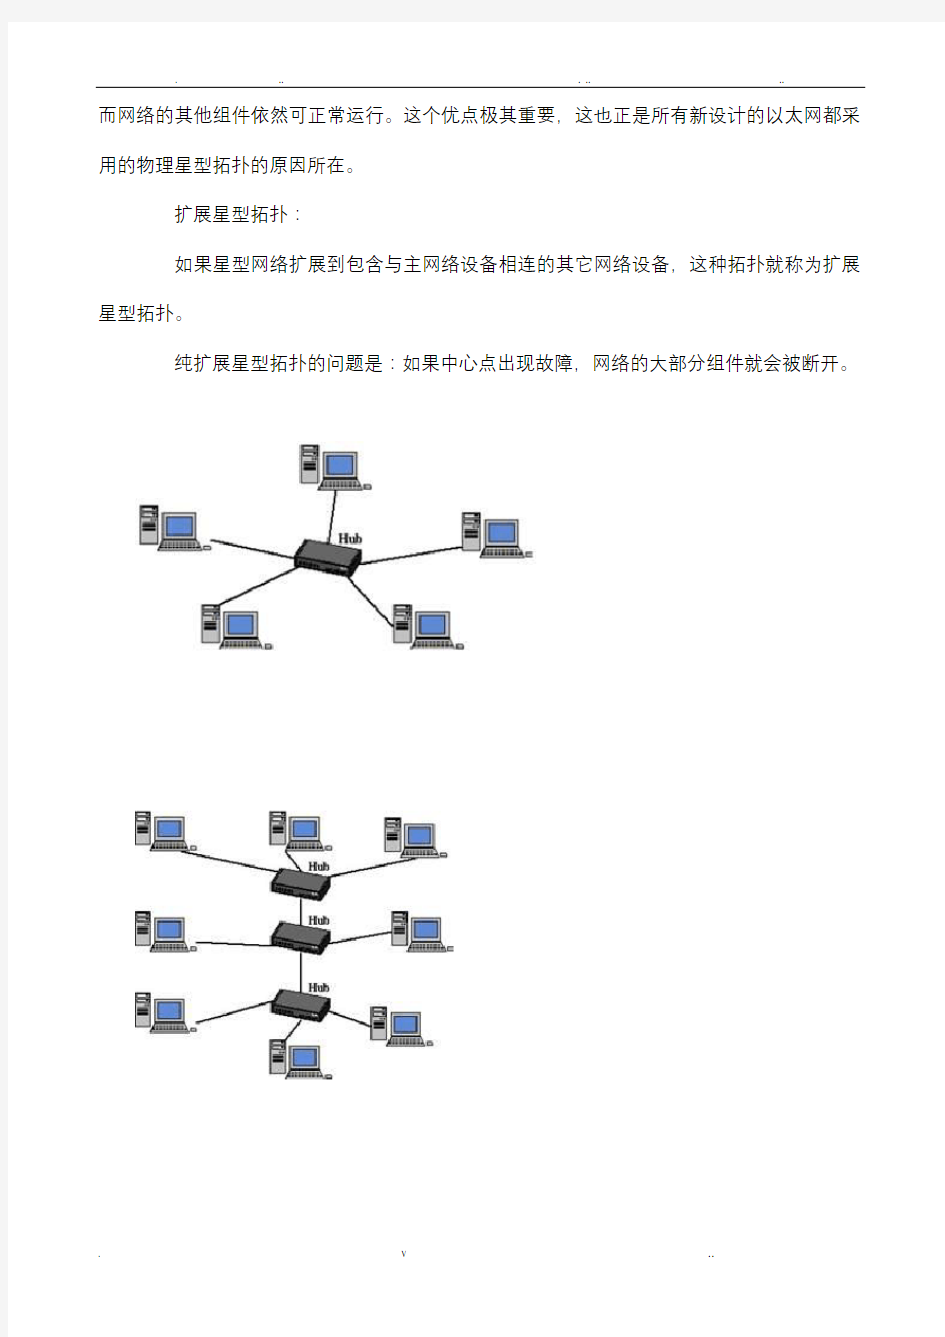 网络拓扑结构大全和图片(星型、总线型、环型、树型、分布式、网状拓扑结构)